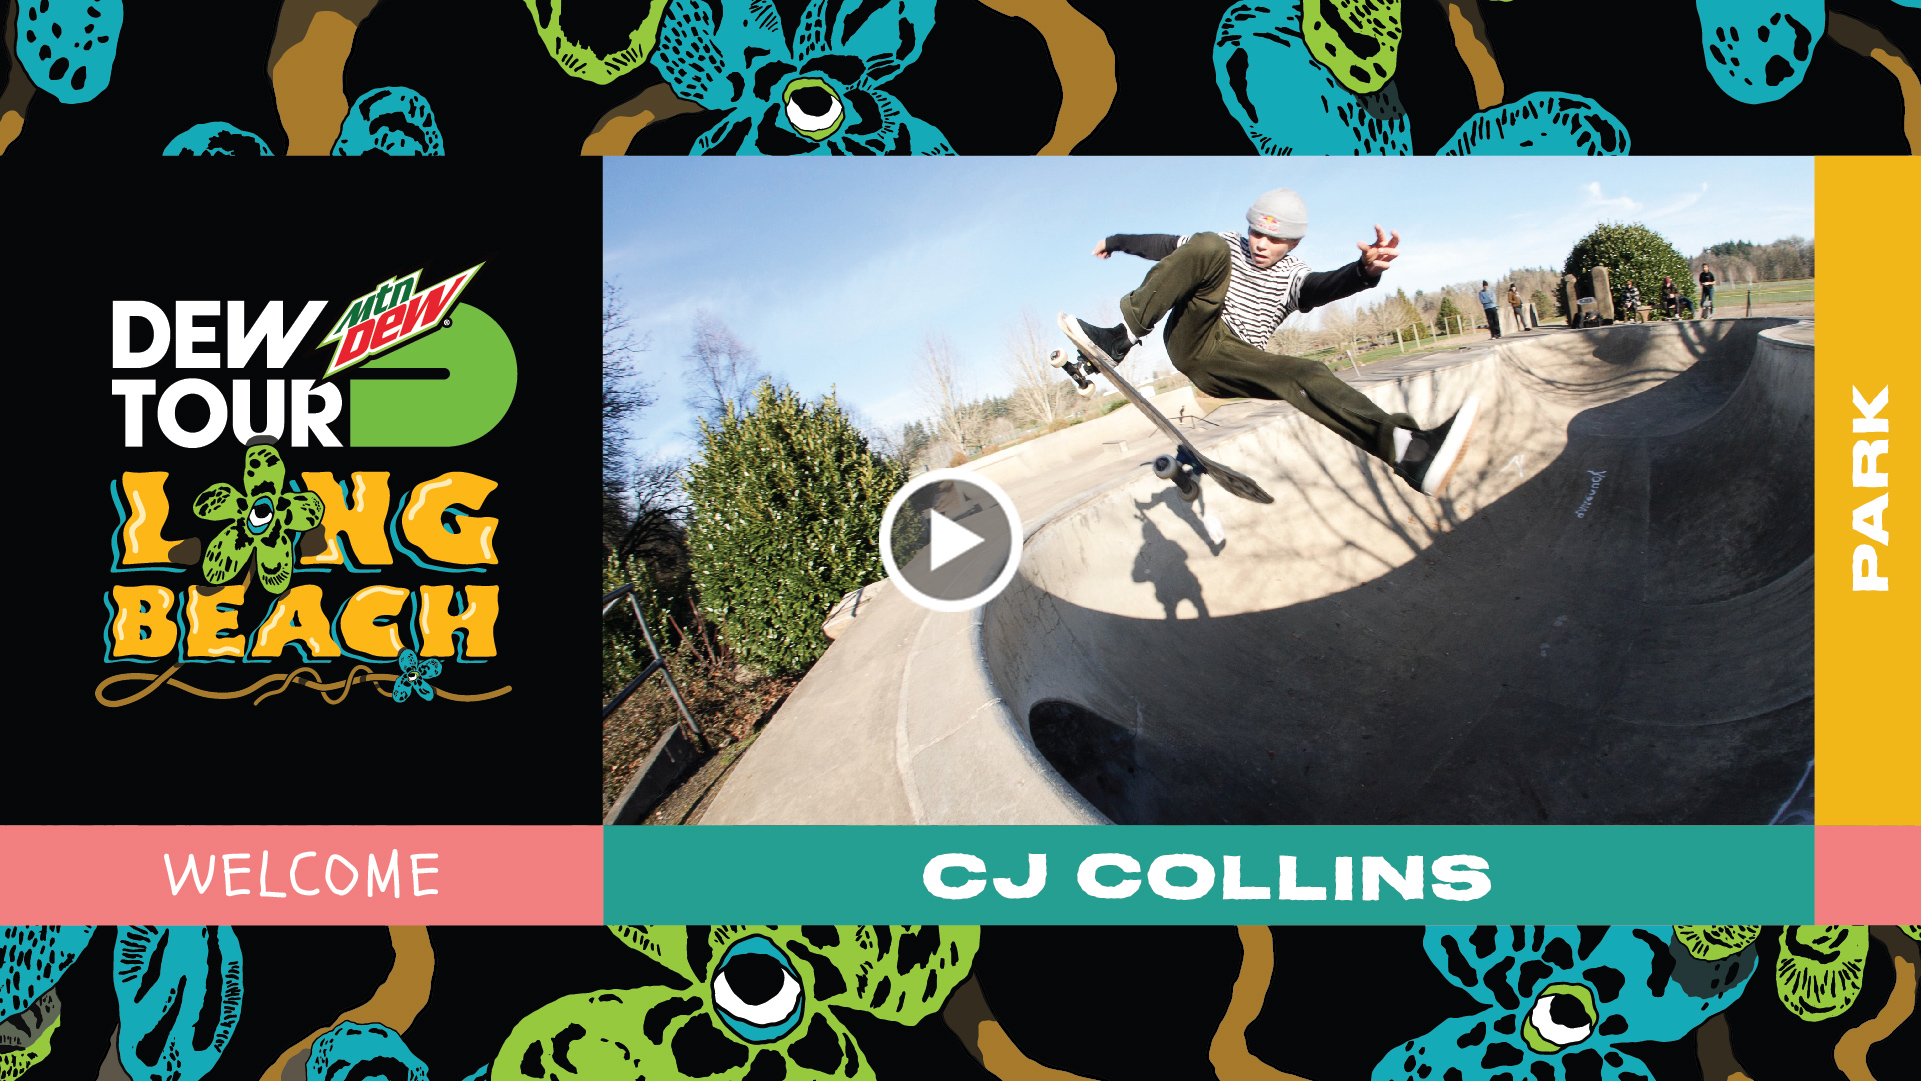 CJ Collins 2019 Dew Tour